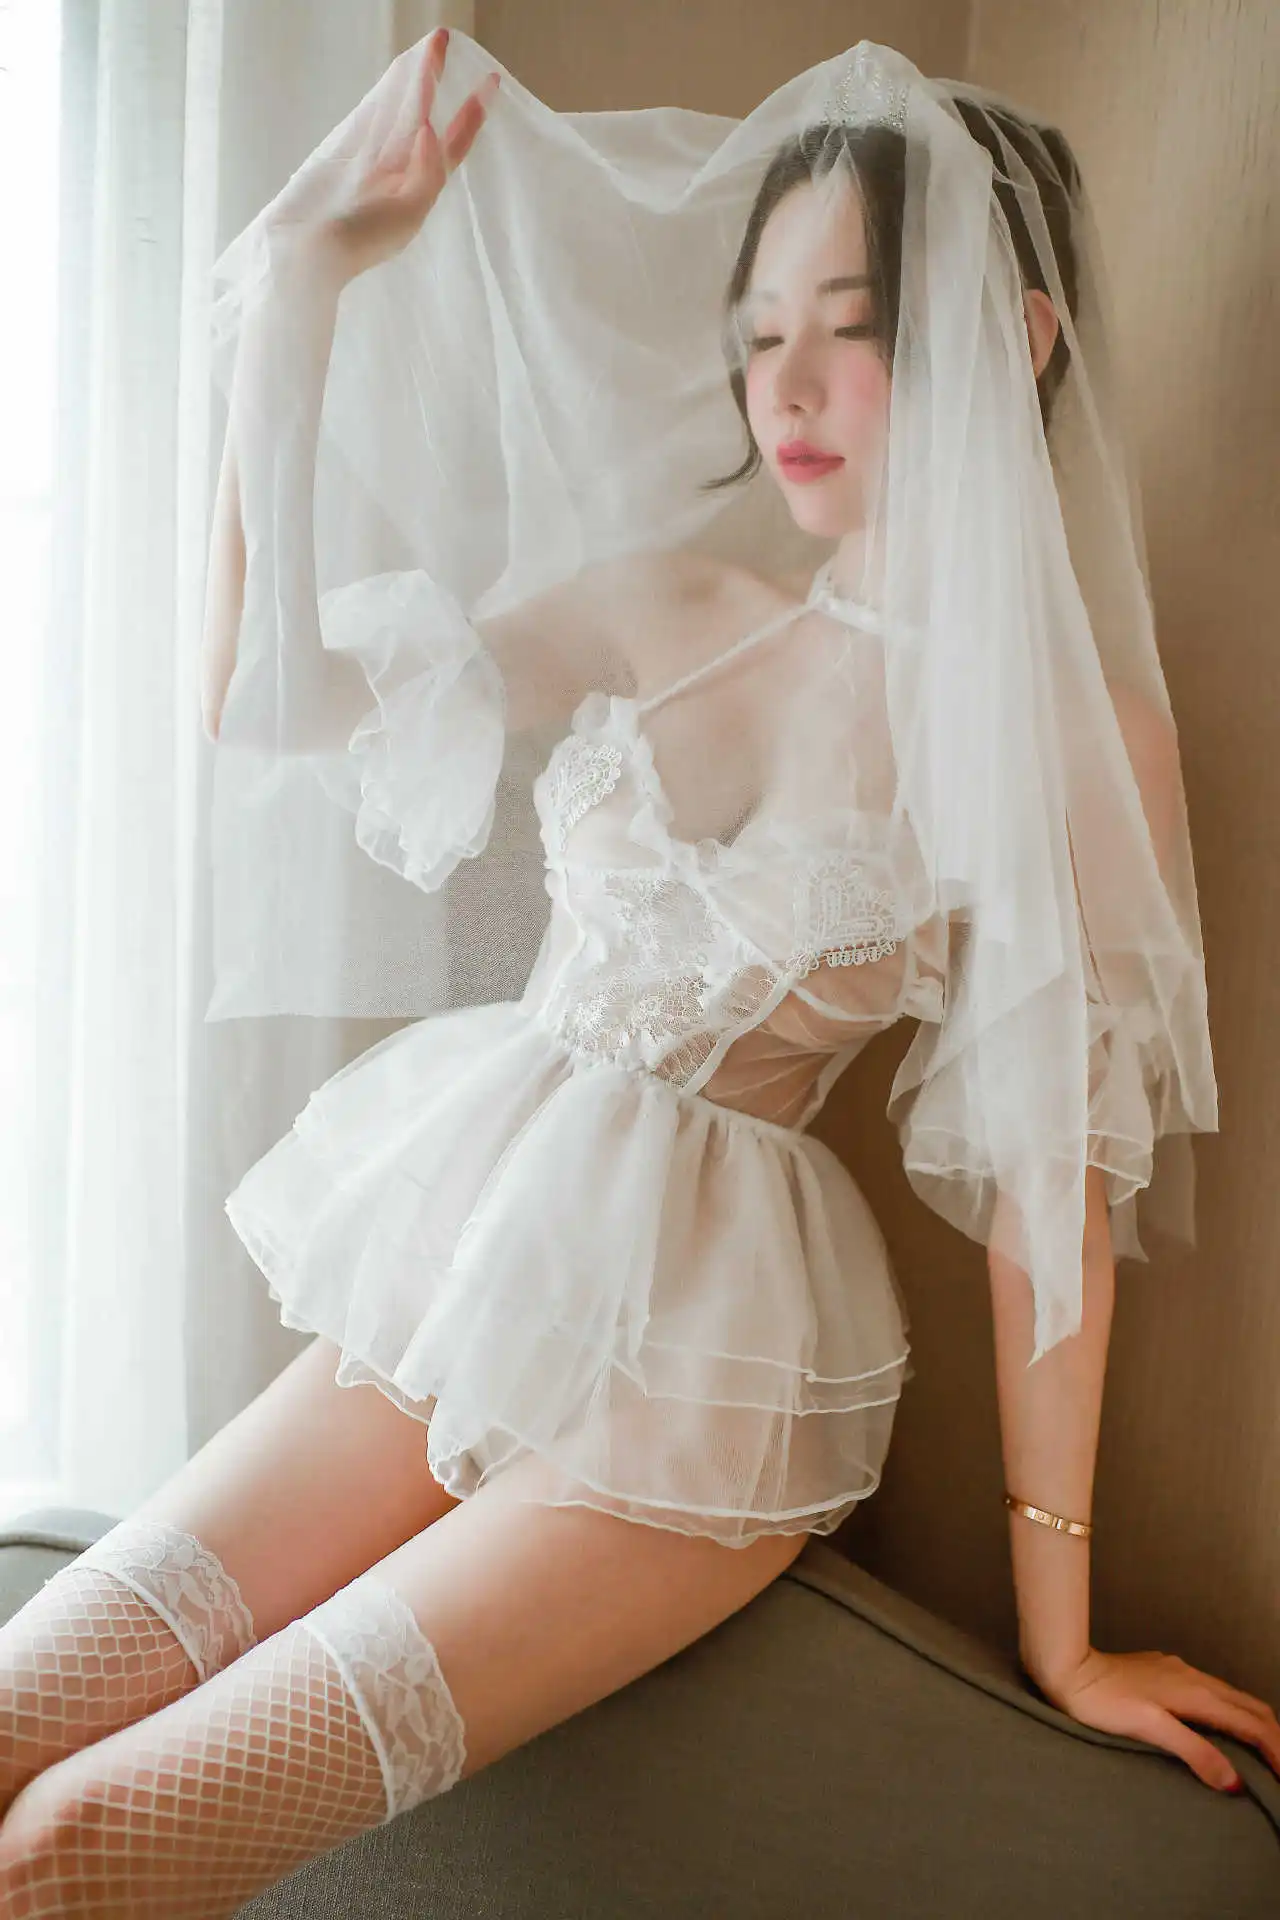 Erotic bridal dress